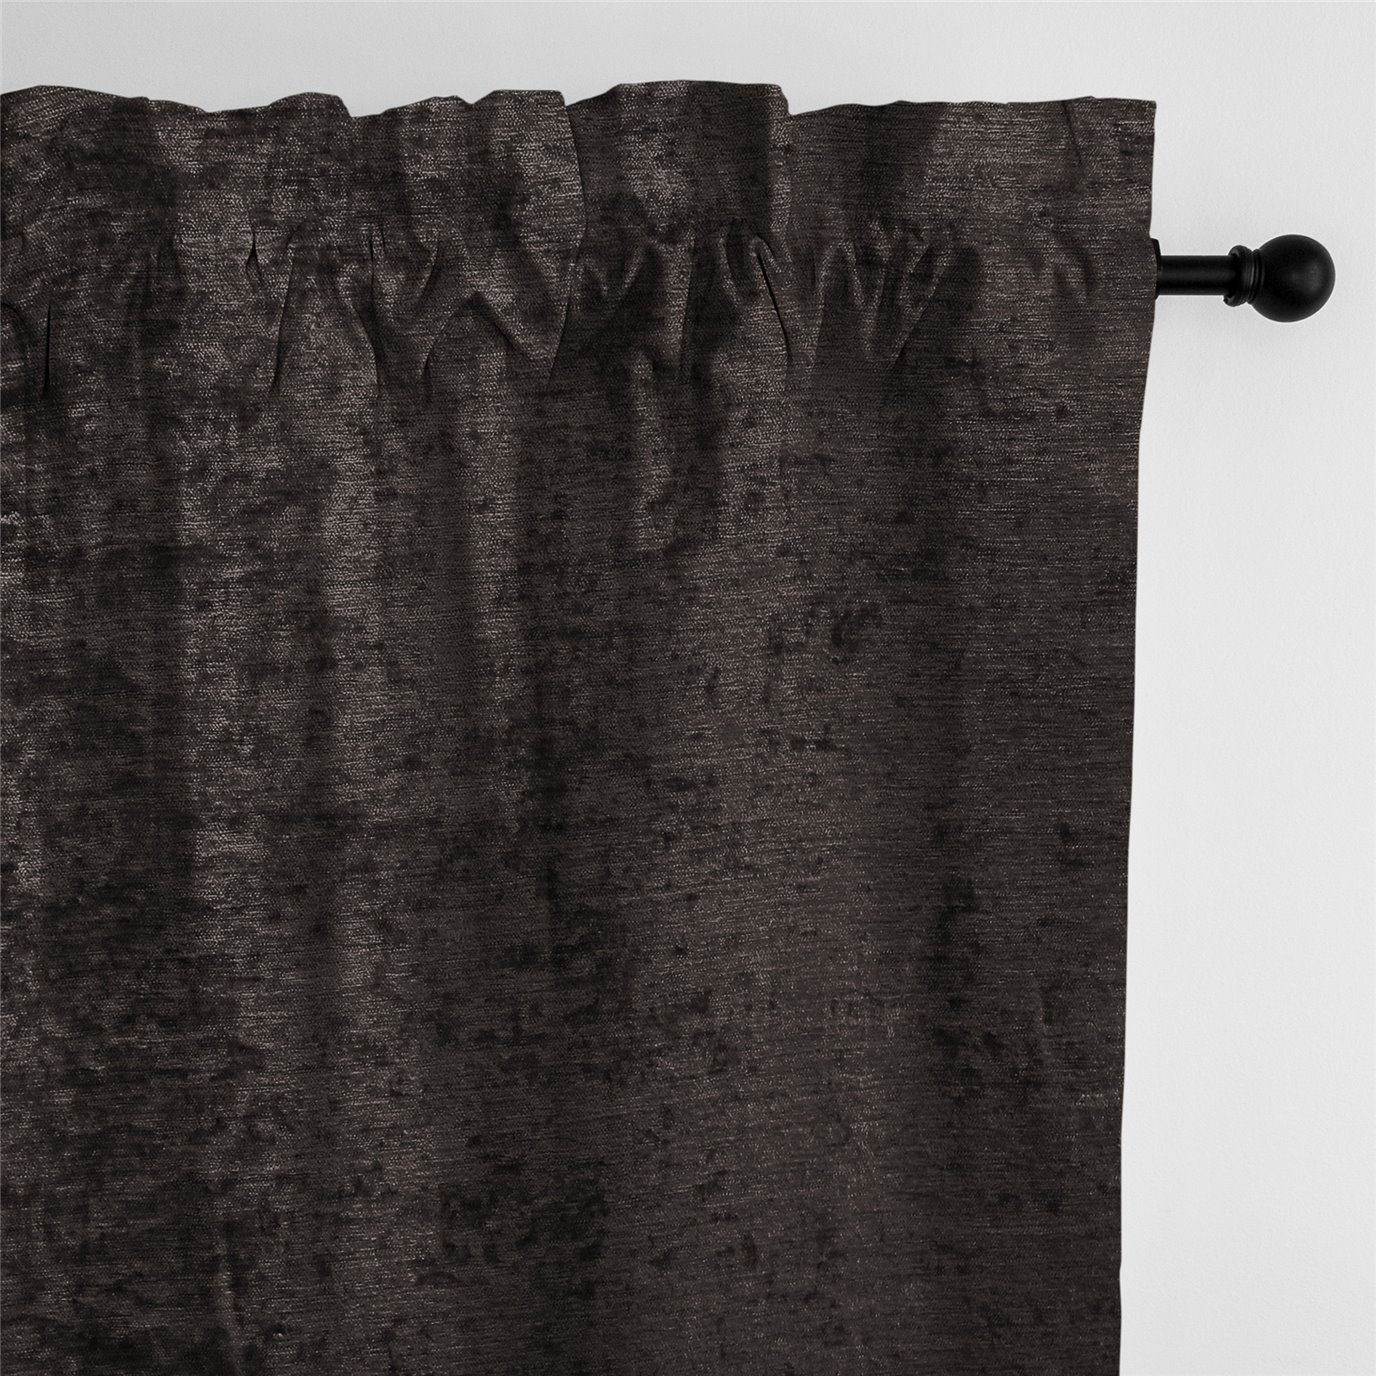 Juno Velvet Chocolate Pole Top Drapery Panel - Pair - Size 50"x108"